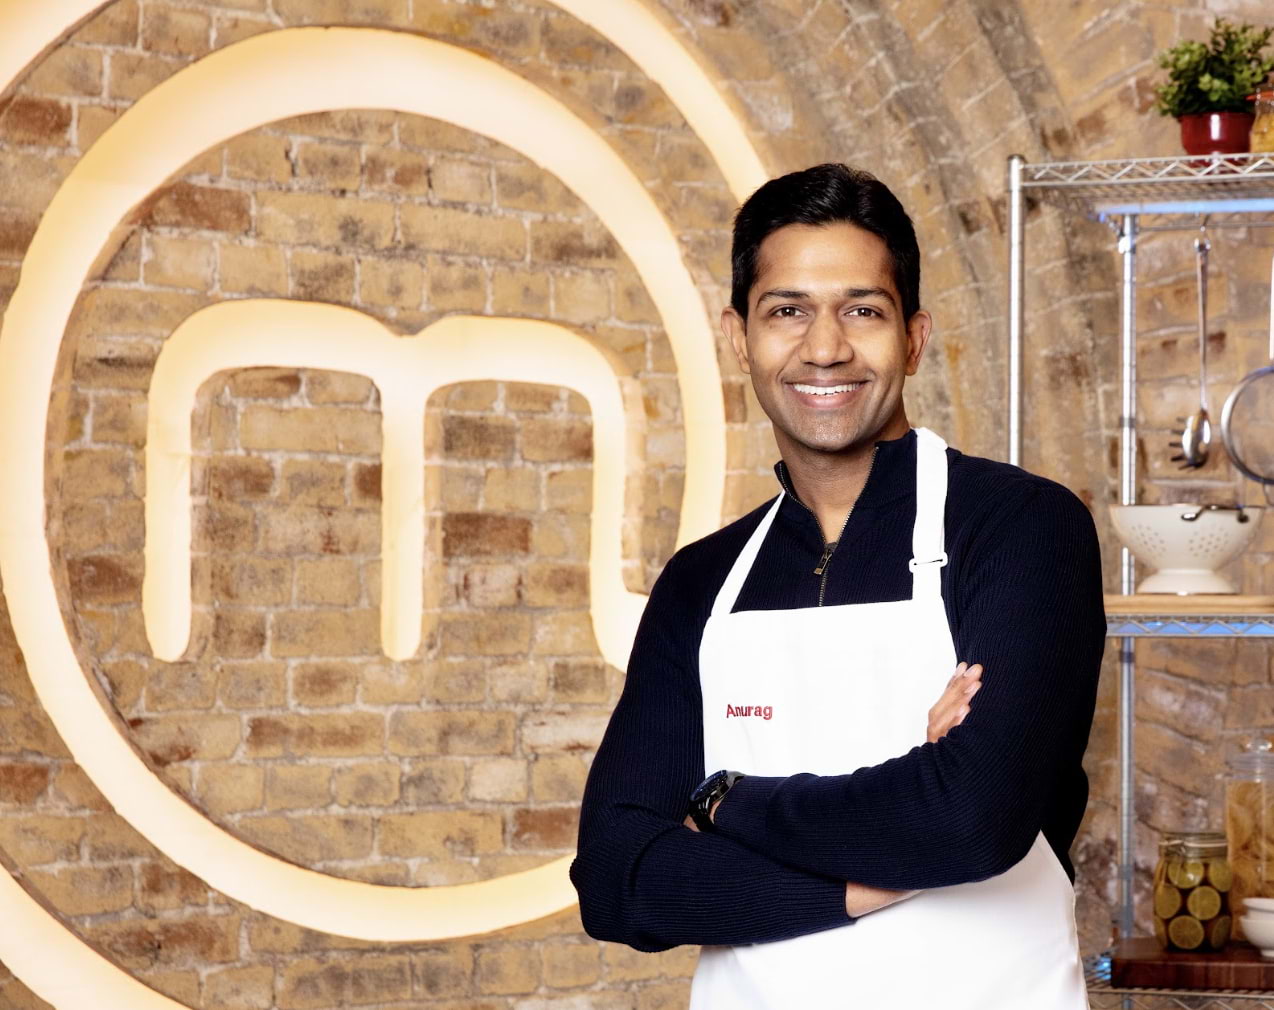 MasterChef UK finalist hosts supper club at London restaurant